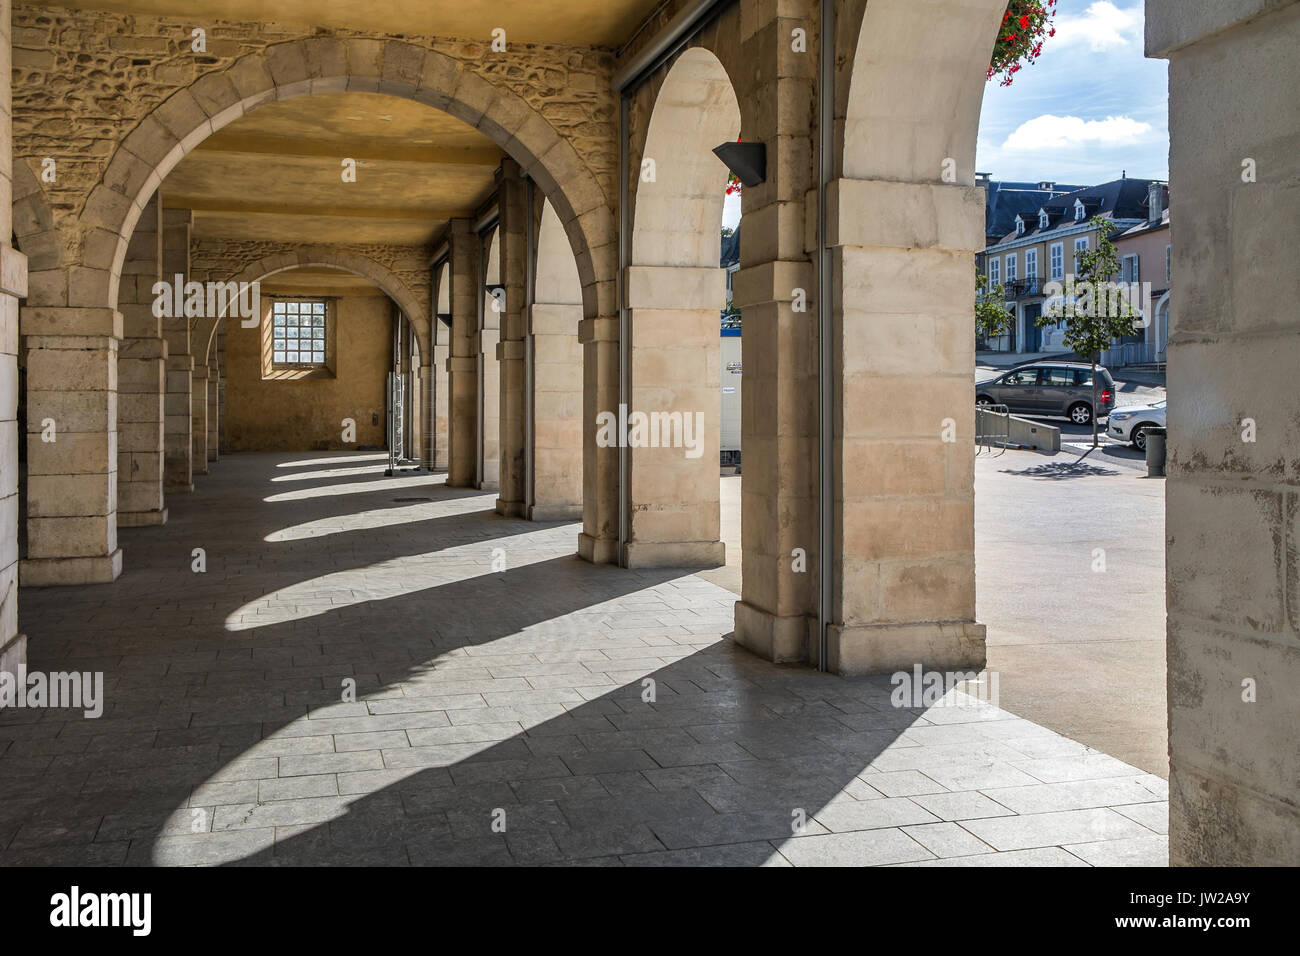 Arched market place under town hall building, Monein, Pyrénées-Atlantiques, France. Stock Photo